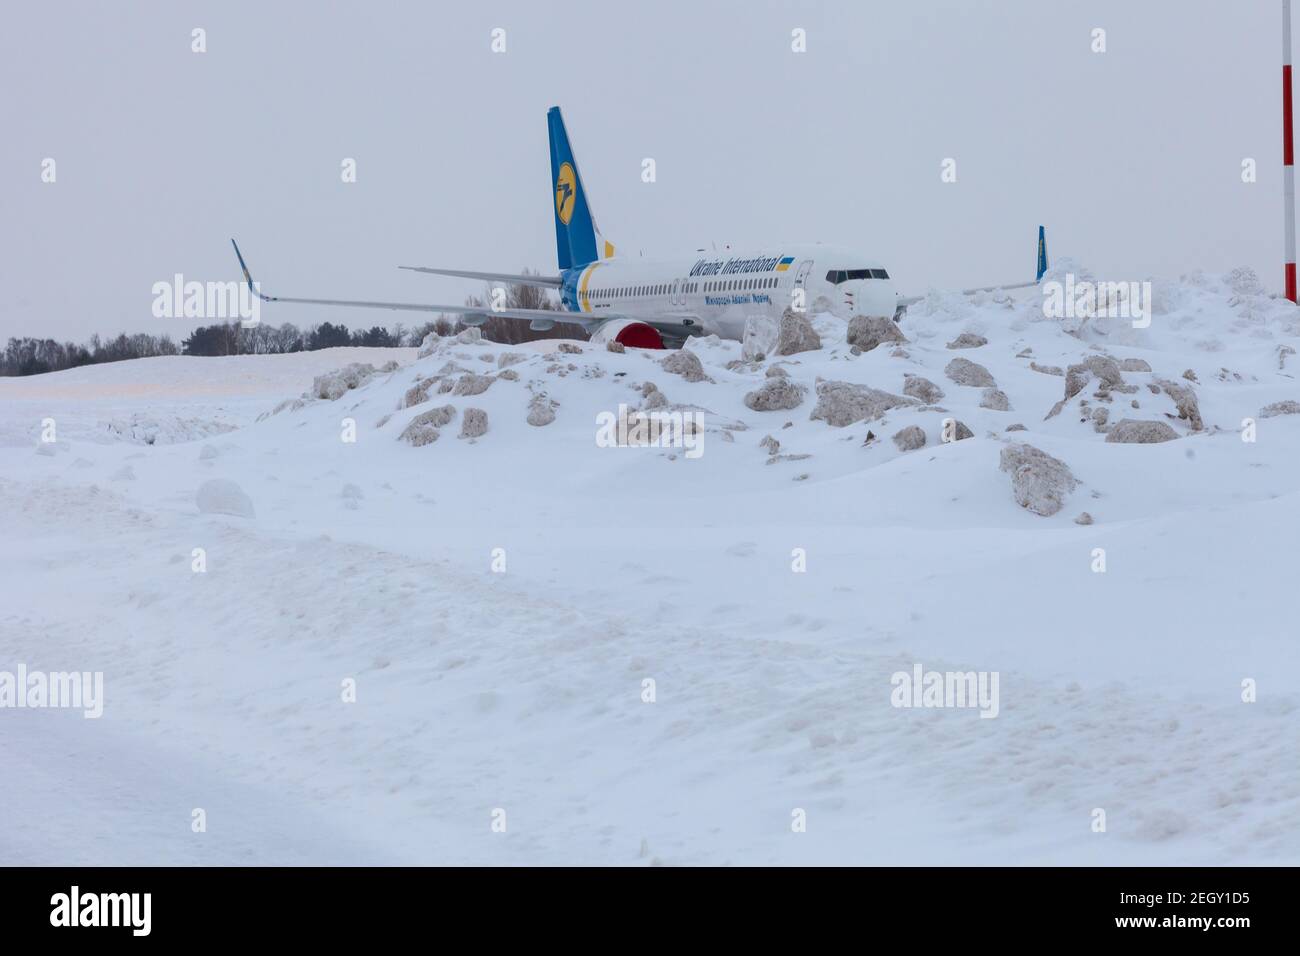 Ukraine, Kiev - 12 février 2021 : avions à l'hiver. Avion. Il y a beaucoup de neige à l'aéroport. Mauvais temps et visibilité. Blocs de neige. Neige Banque D'Images